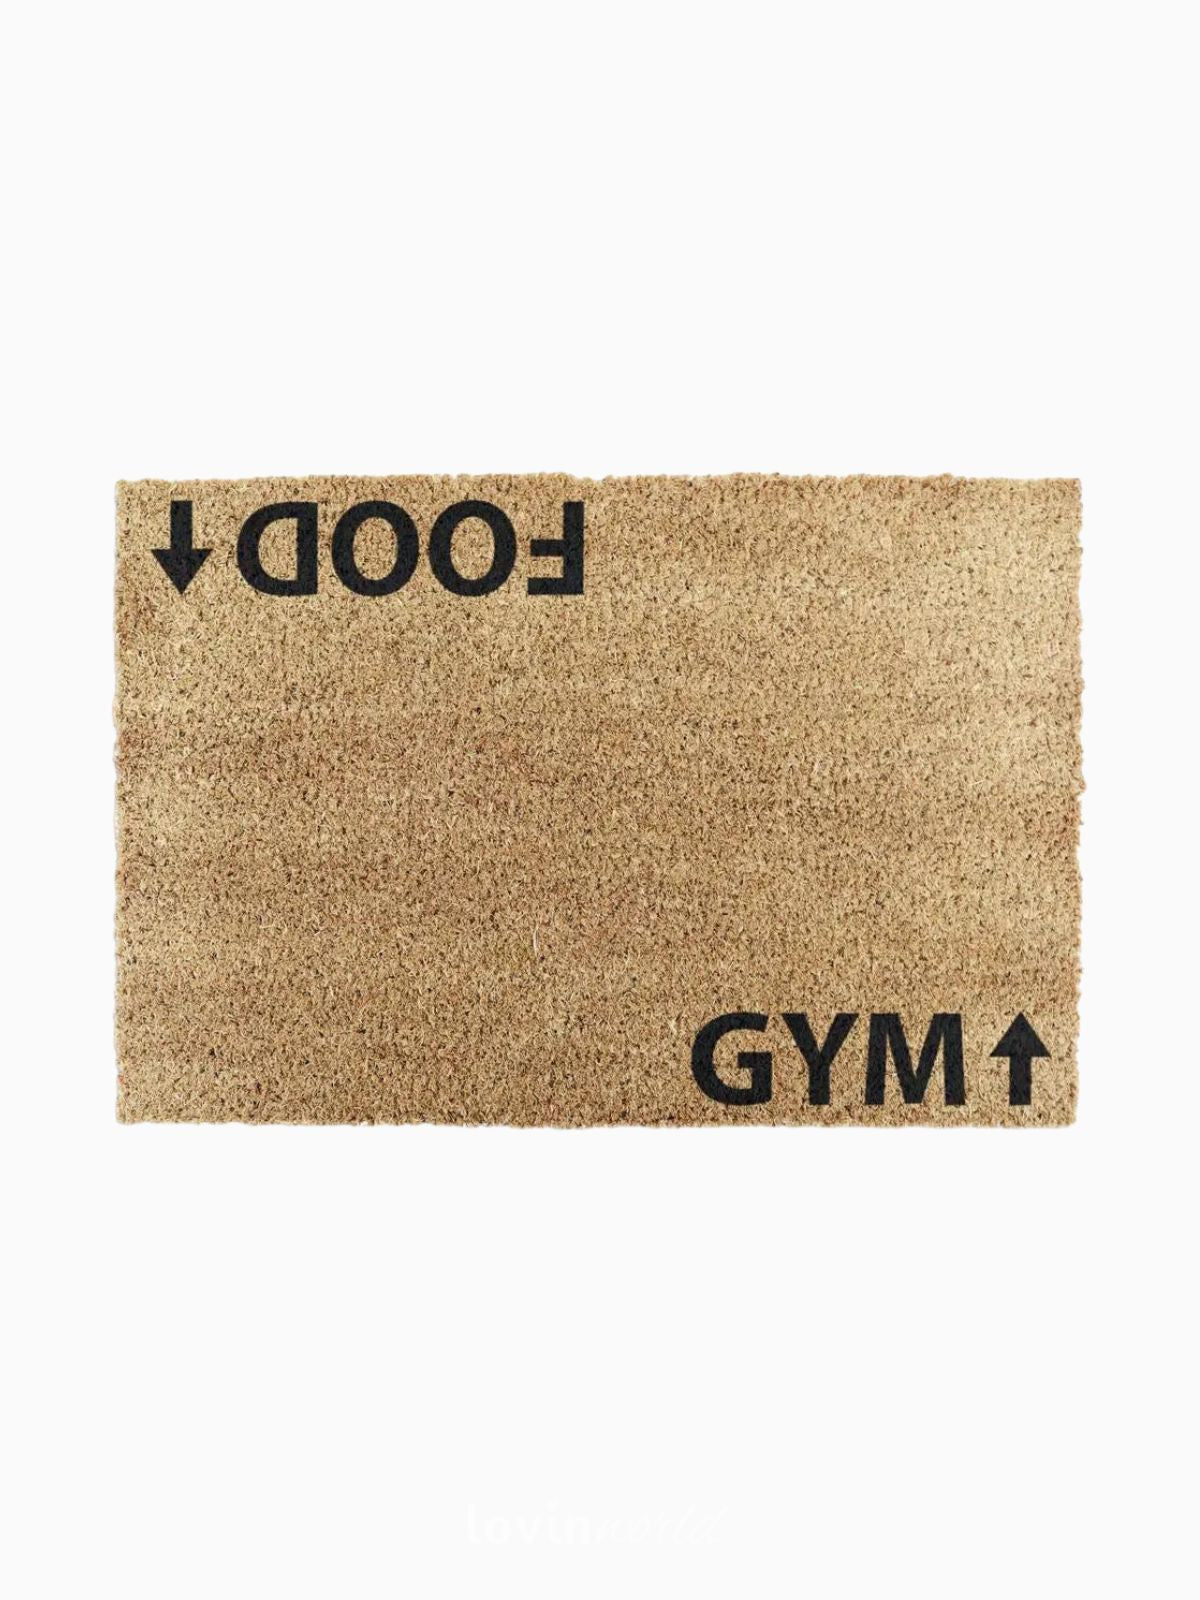 Zerbino Gym Addict, in fibra di cocco naturale 40x60 cm.-1